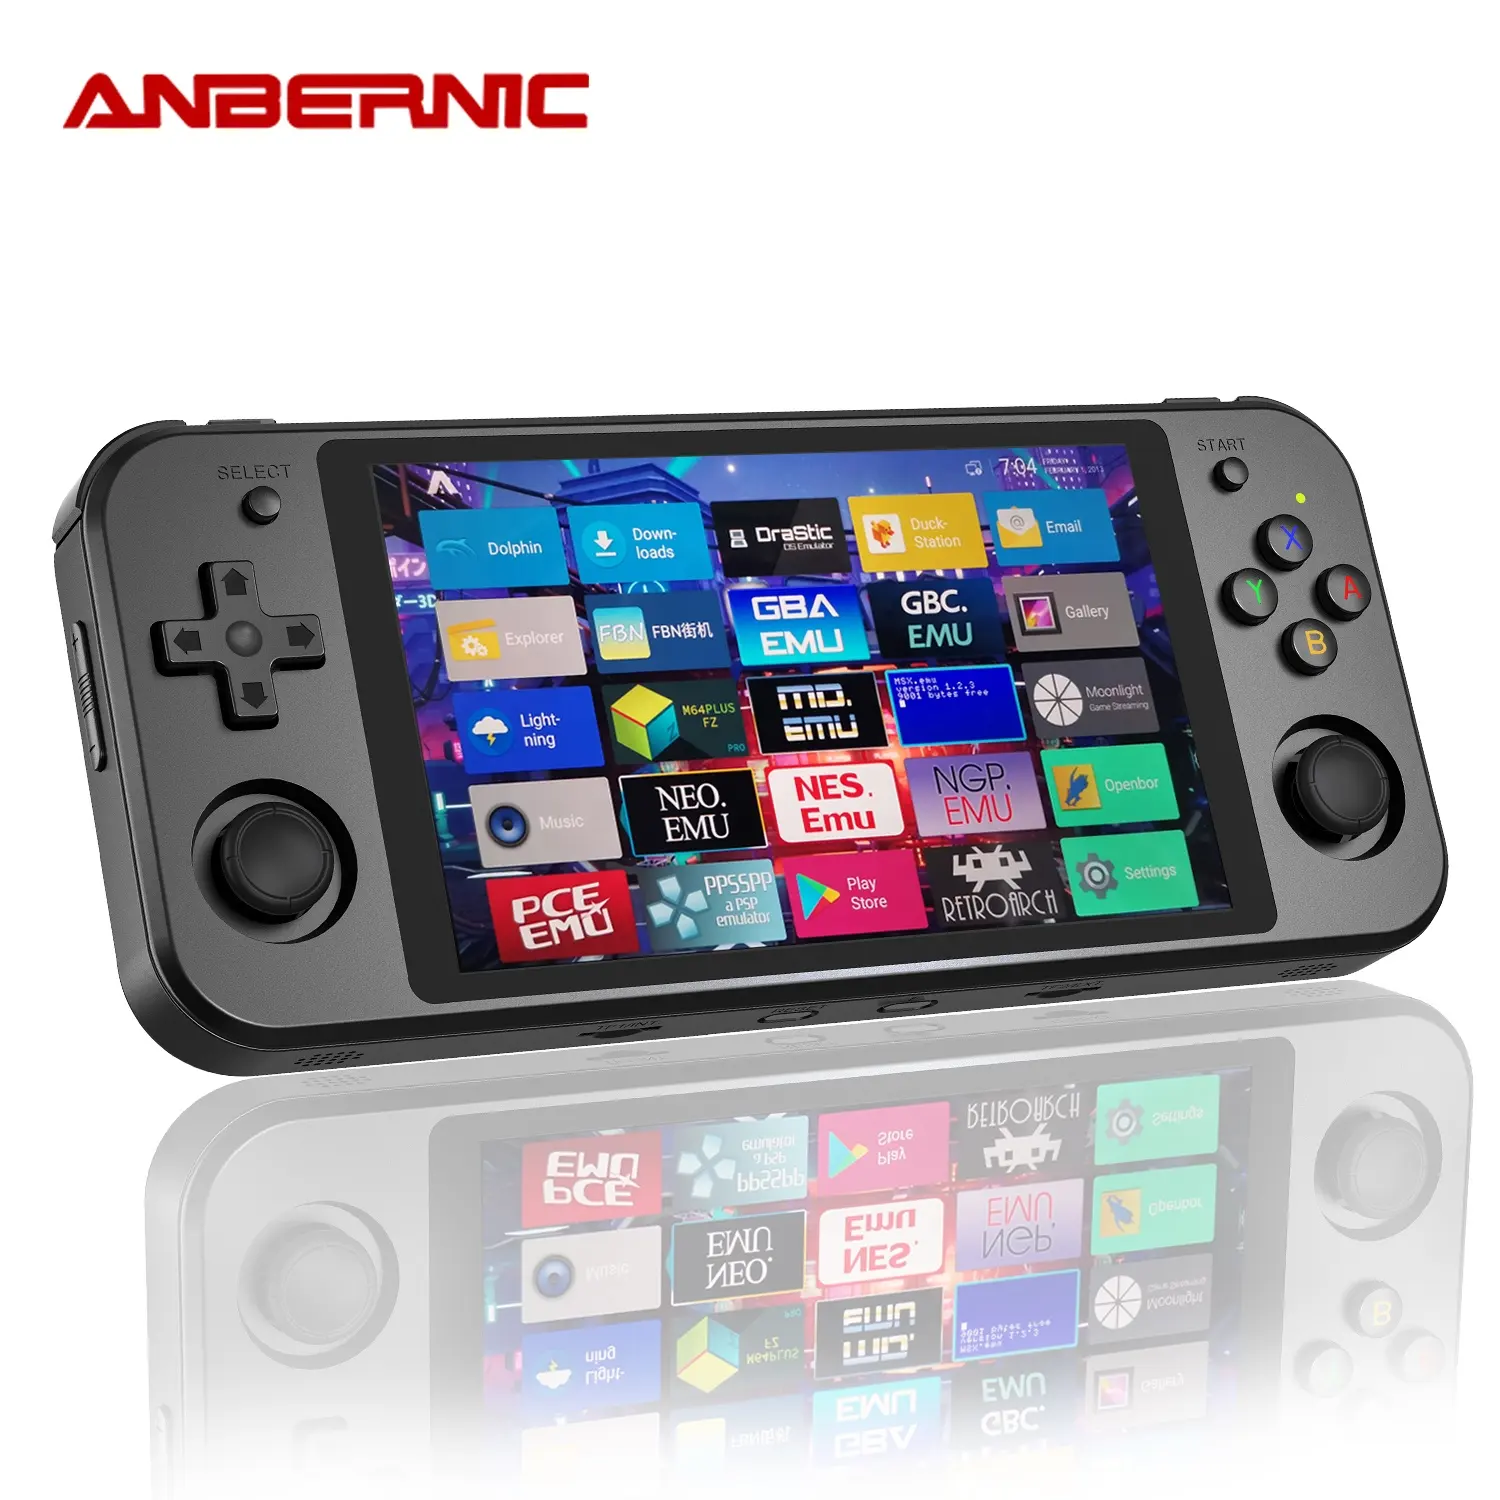 ANBERNIC-consola de juegos portátil RK3399, sistema Dual Linux, Android, pantalla OCA de 5,36 pulgadas, RG552, Retro, mejor PC para videojuegos